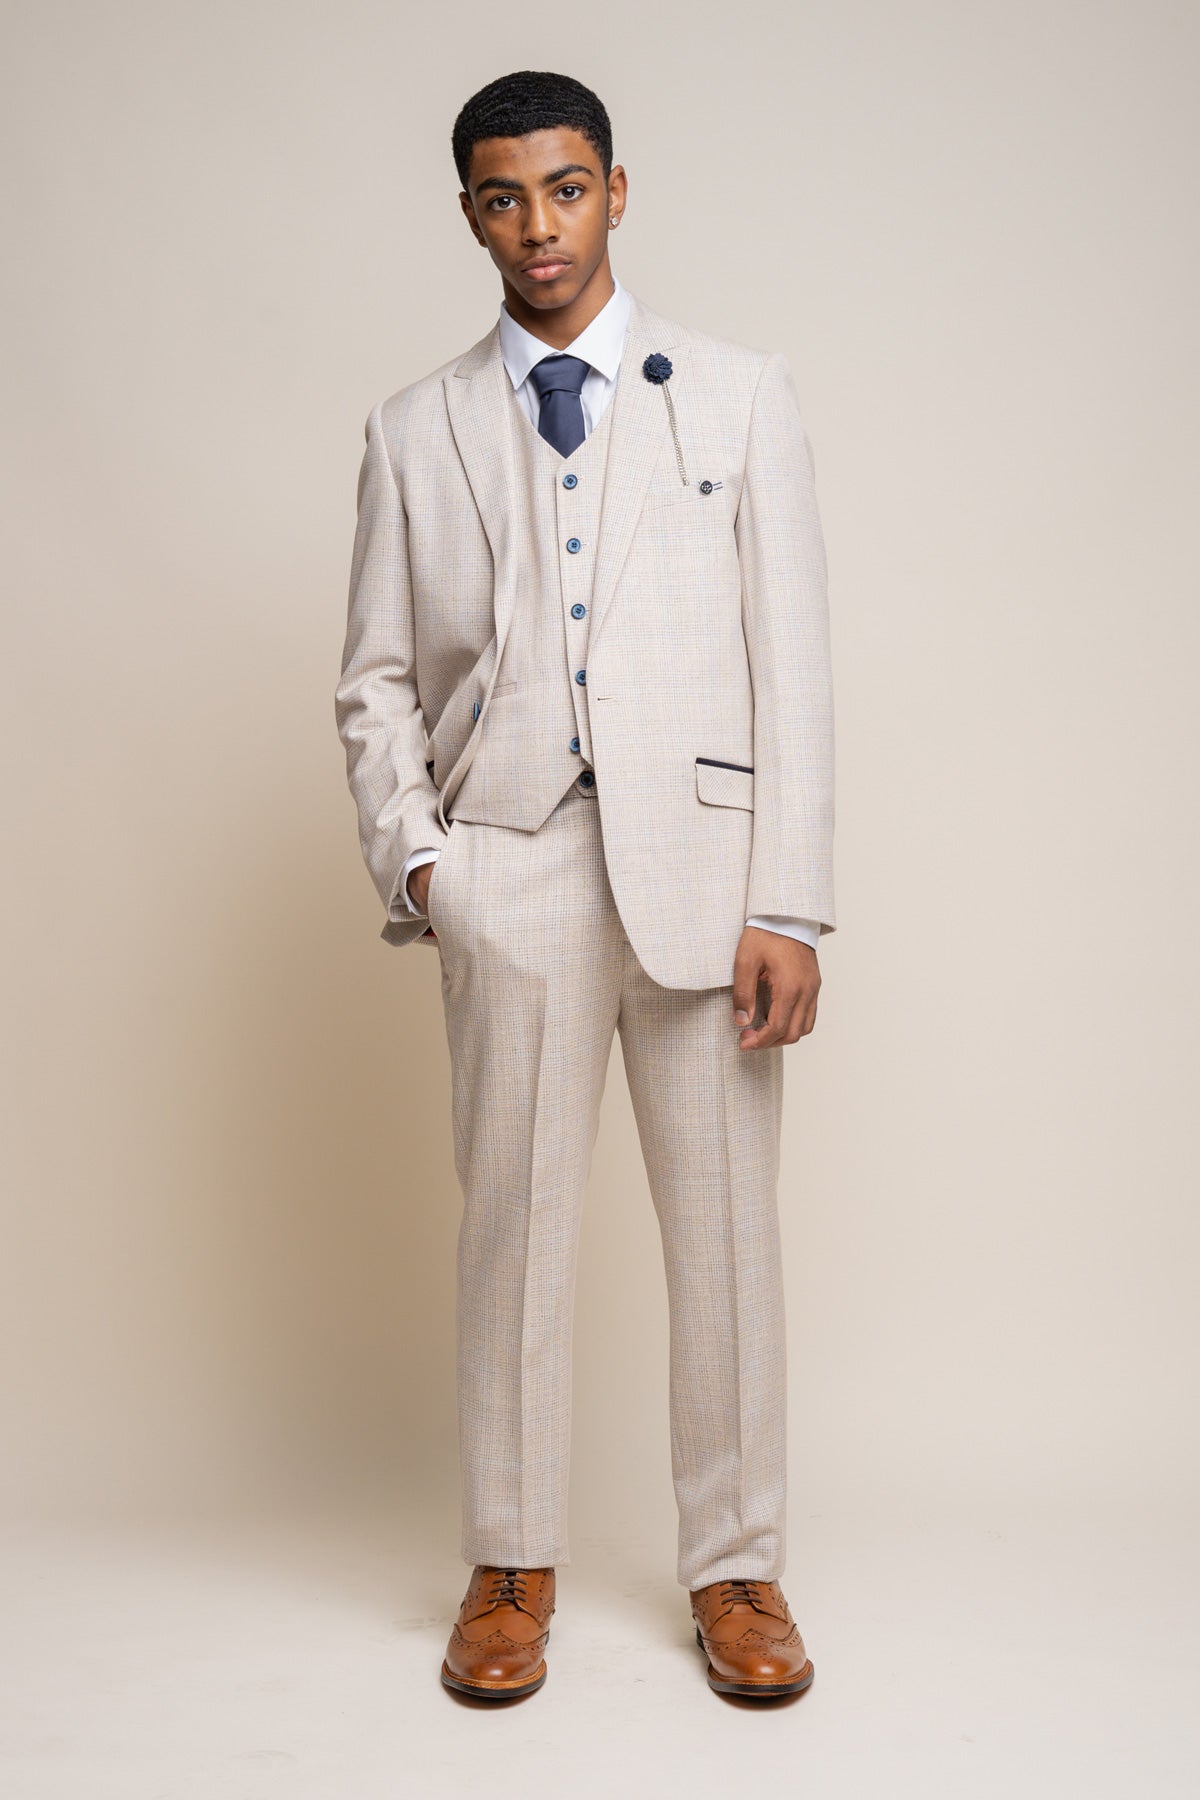 Caridi Beige Boys 3 Piece Wedding Suit